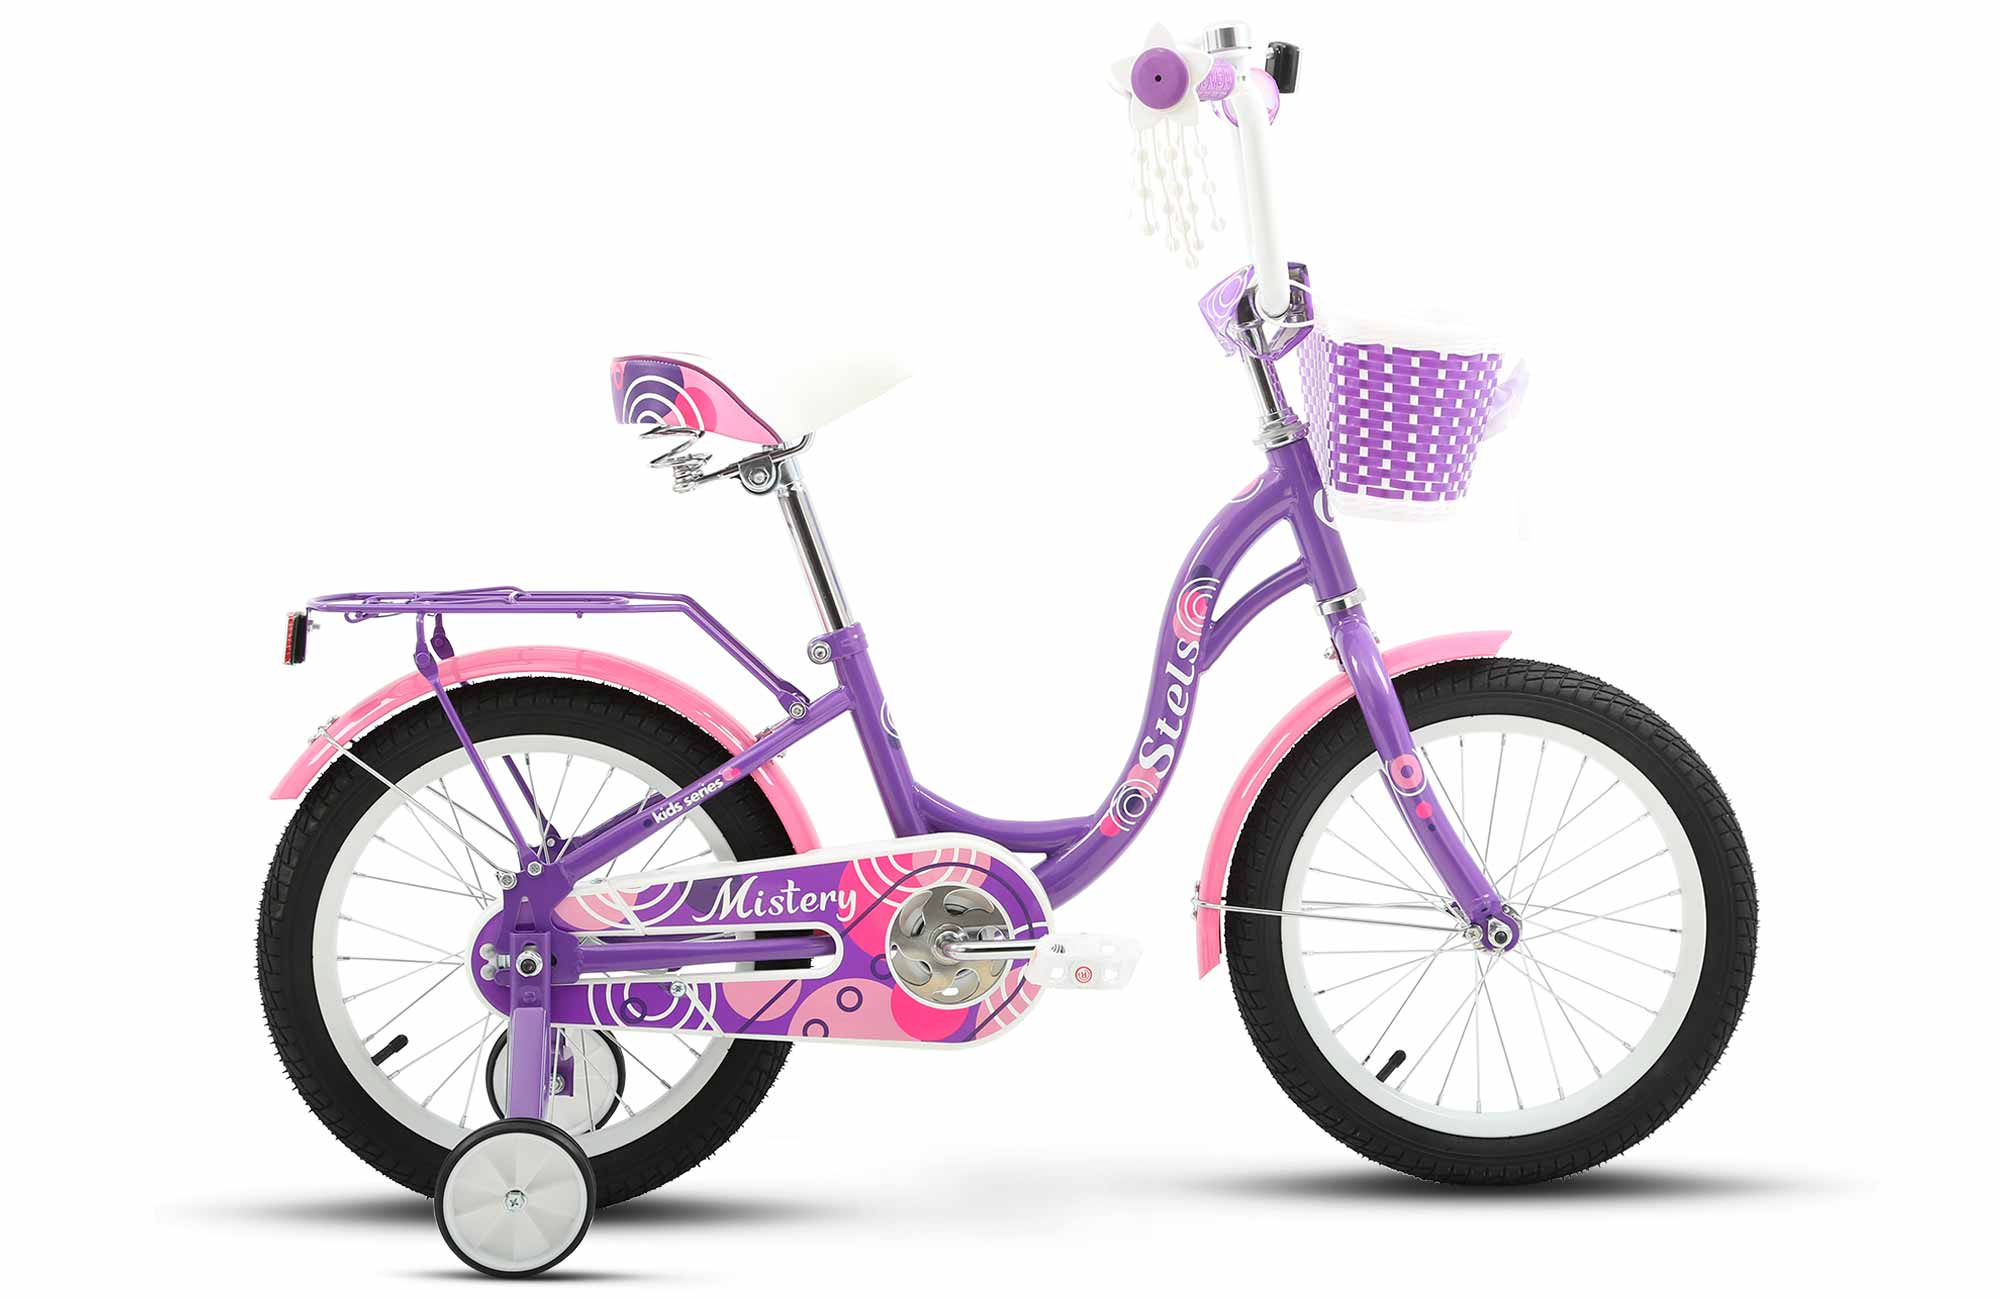 Детский велосипед STELS Mistery C 16 Z010 9.6 Фиолетовый велосипед детский двухколесный stels 16 jet z010